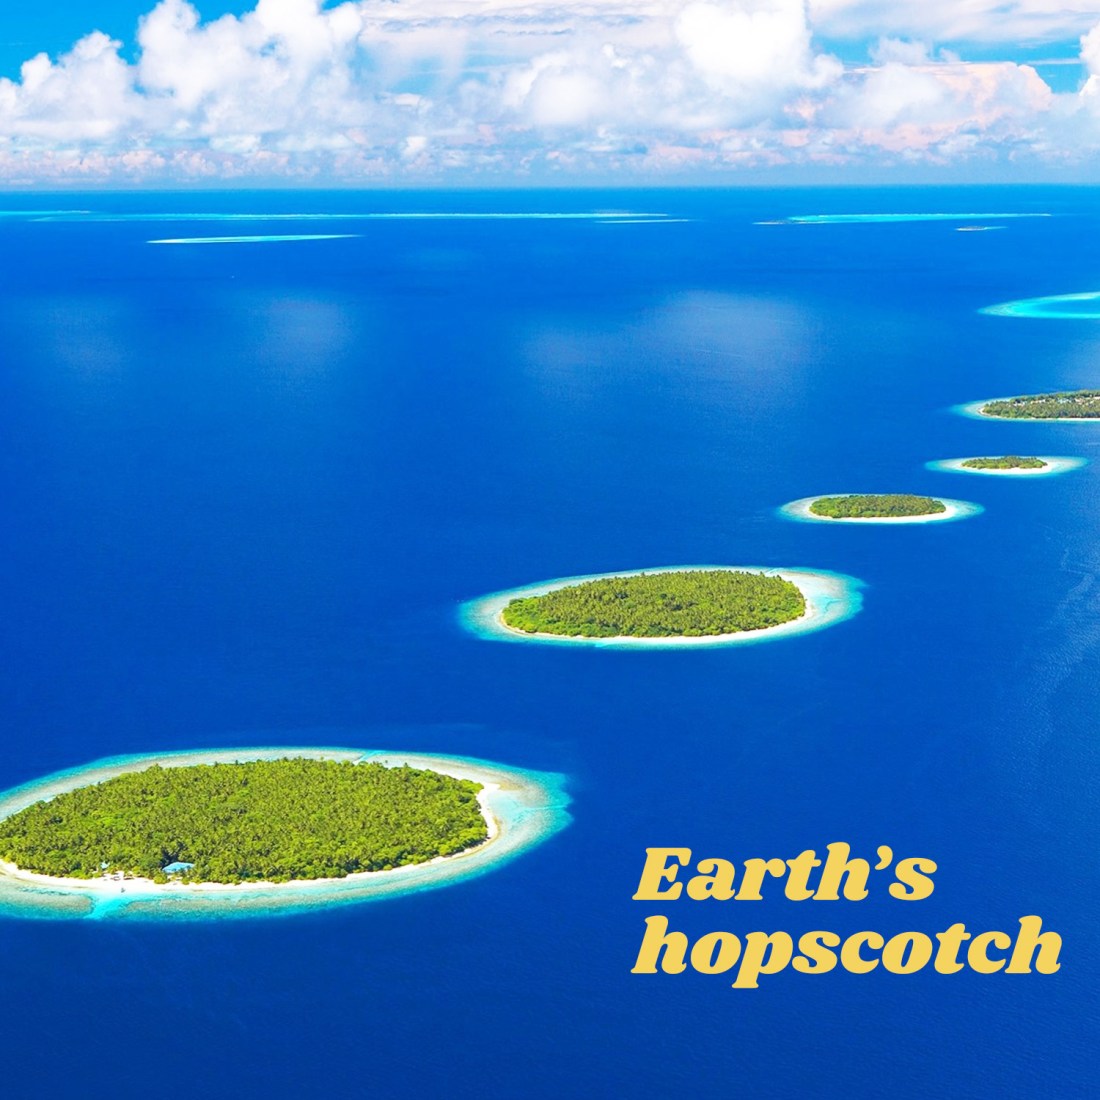 Earth’s hopscotch